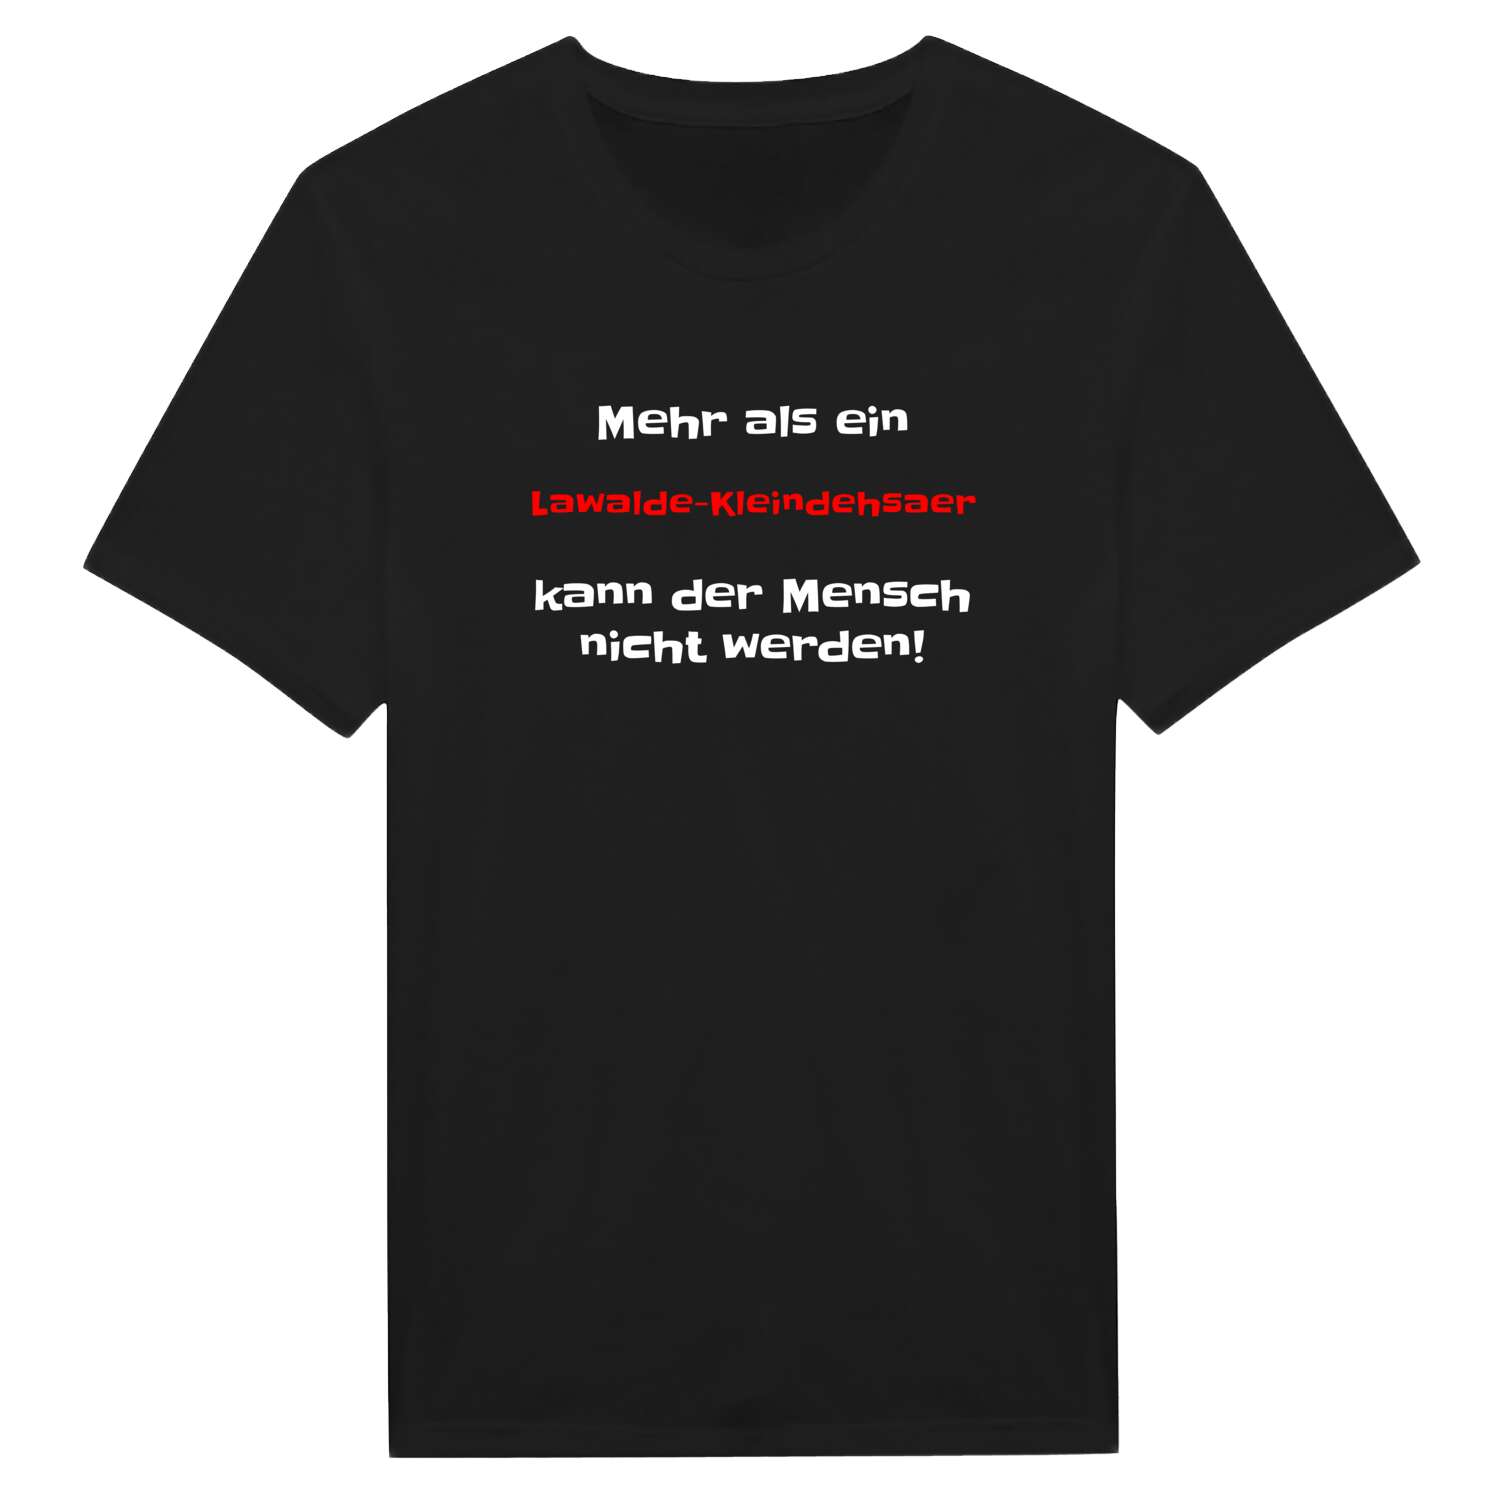 Lawalde-Kleindehsa T-Shirt »Mehr als ein«